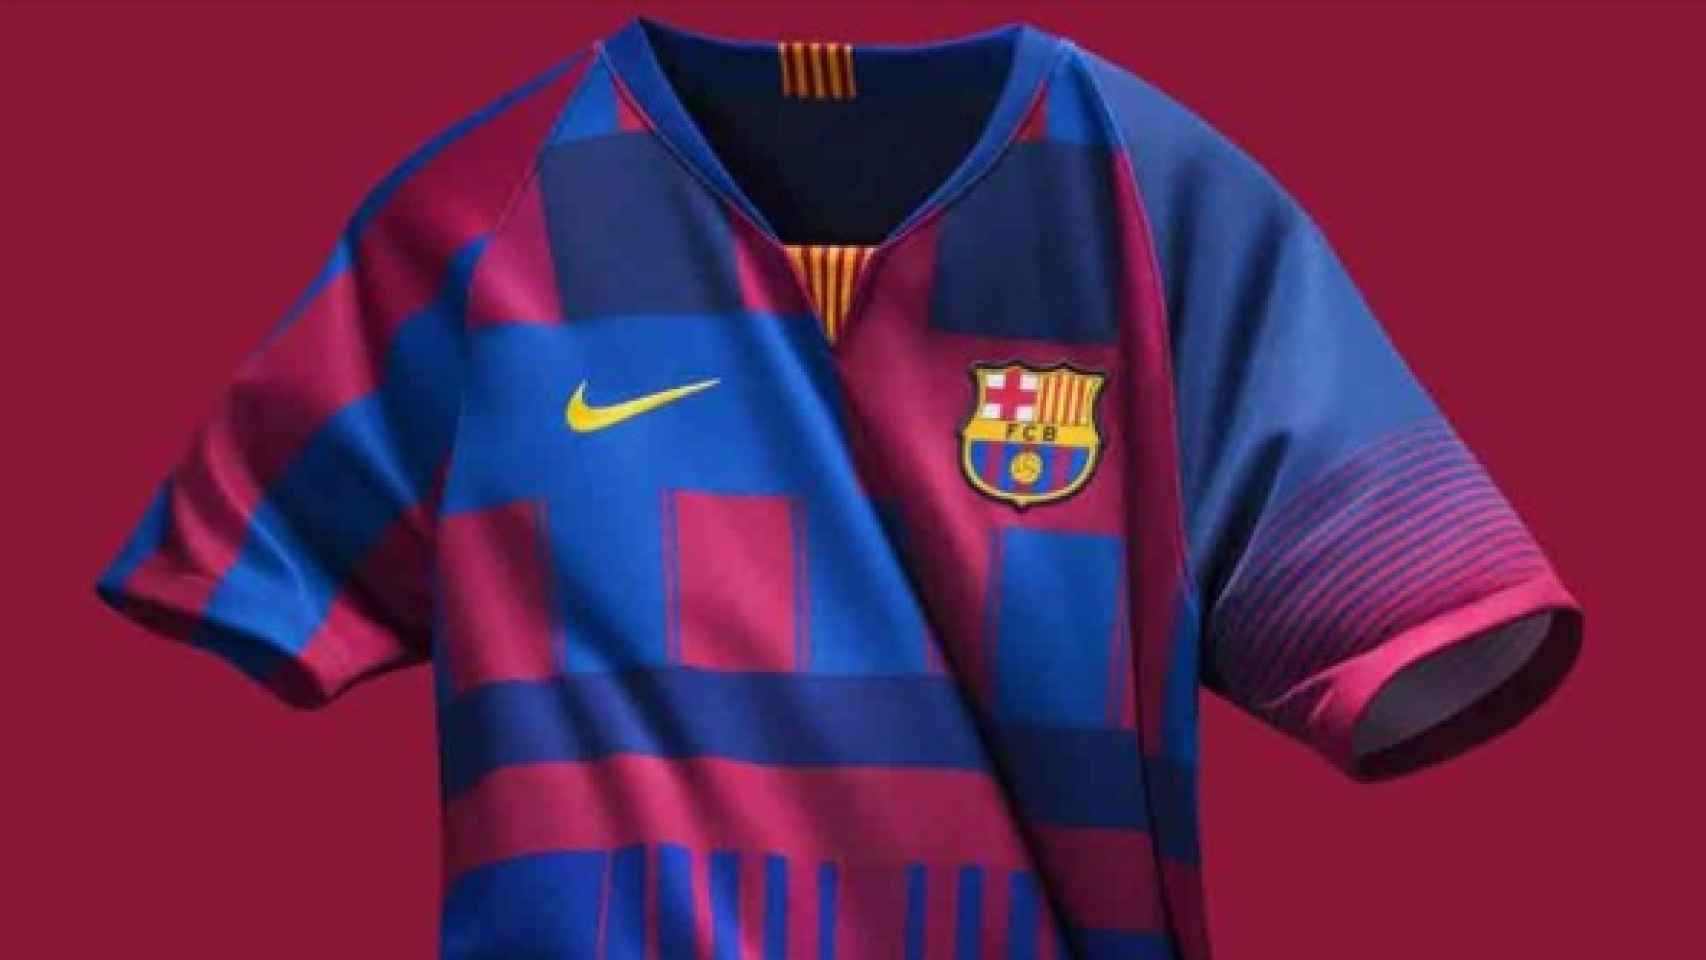 La camiseta de Nike por los 20 años juntos al Barça. Foto: Nike